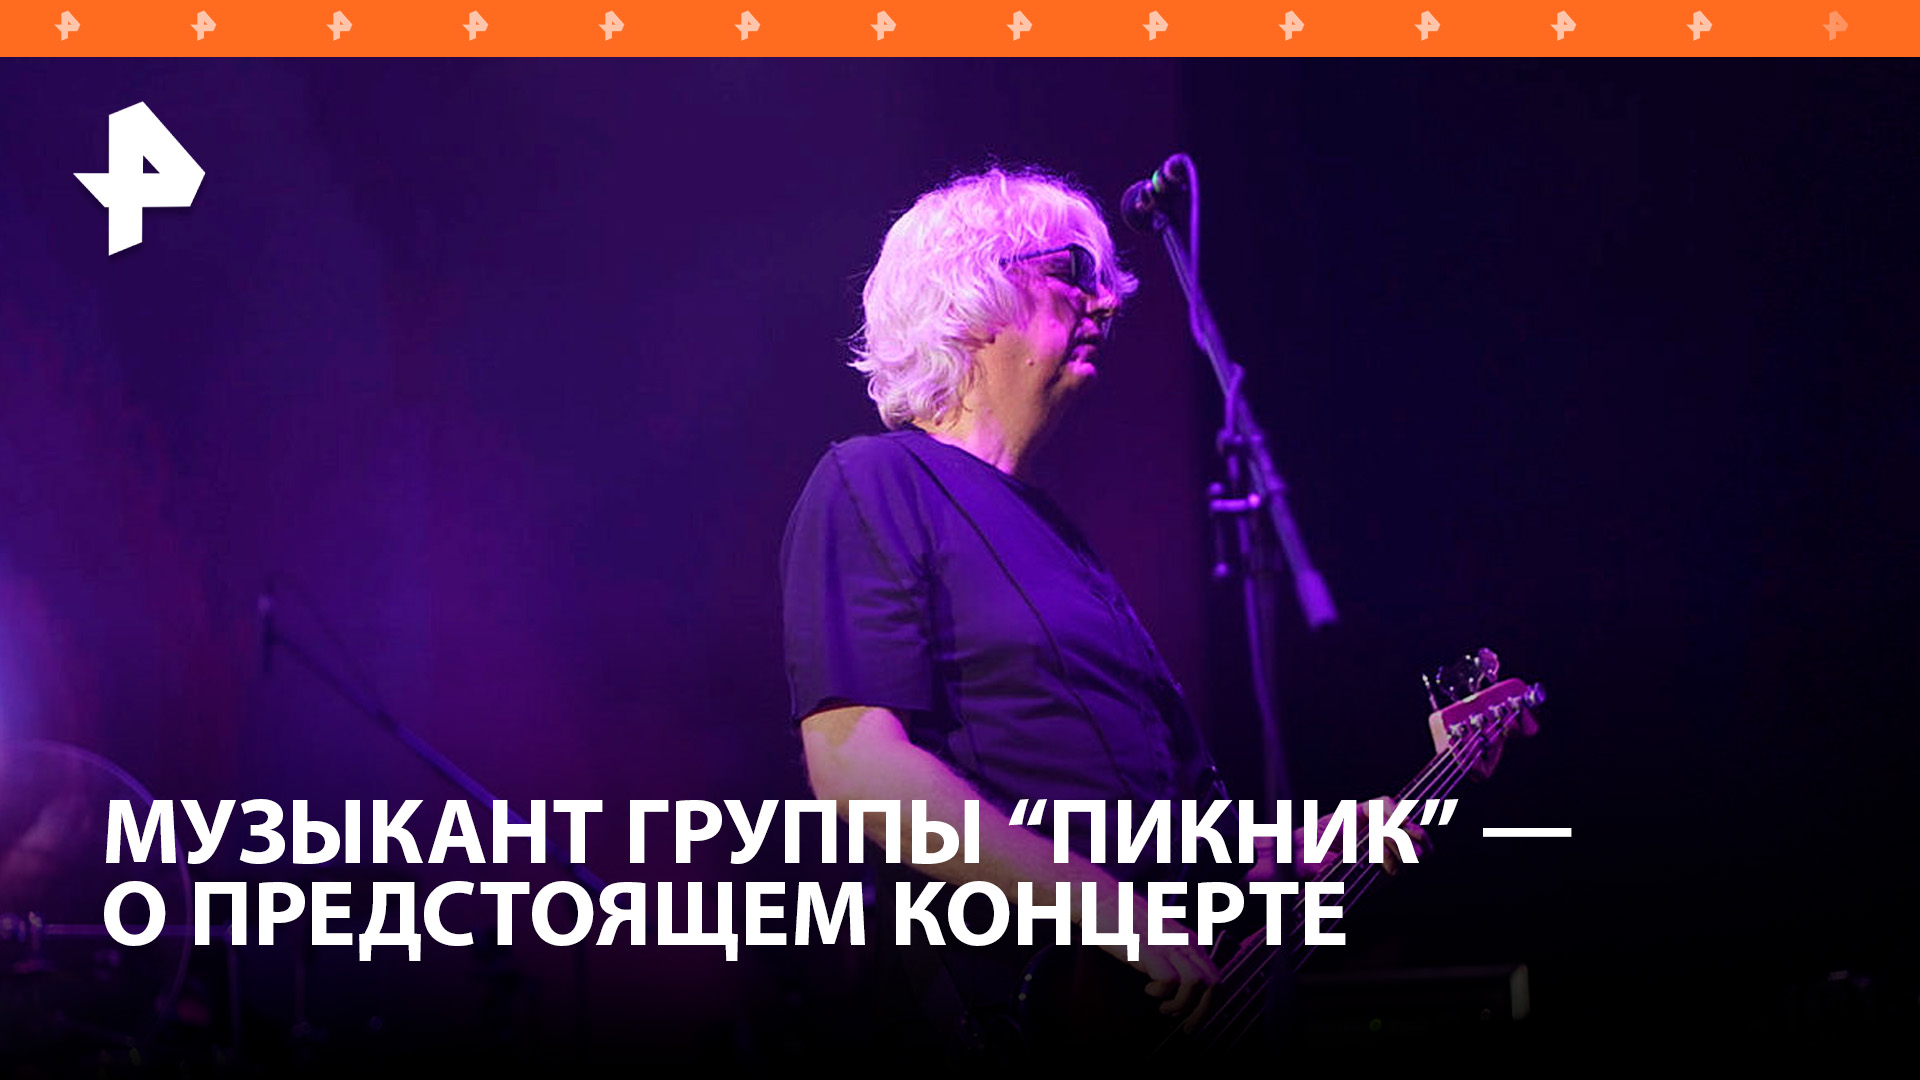 Музыкант группы "Пикник" Марат Корчемный рассказал о предстоящем благотворительном концерте